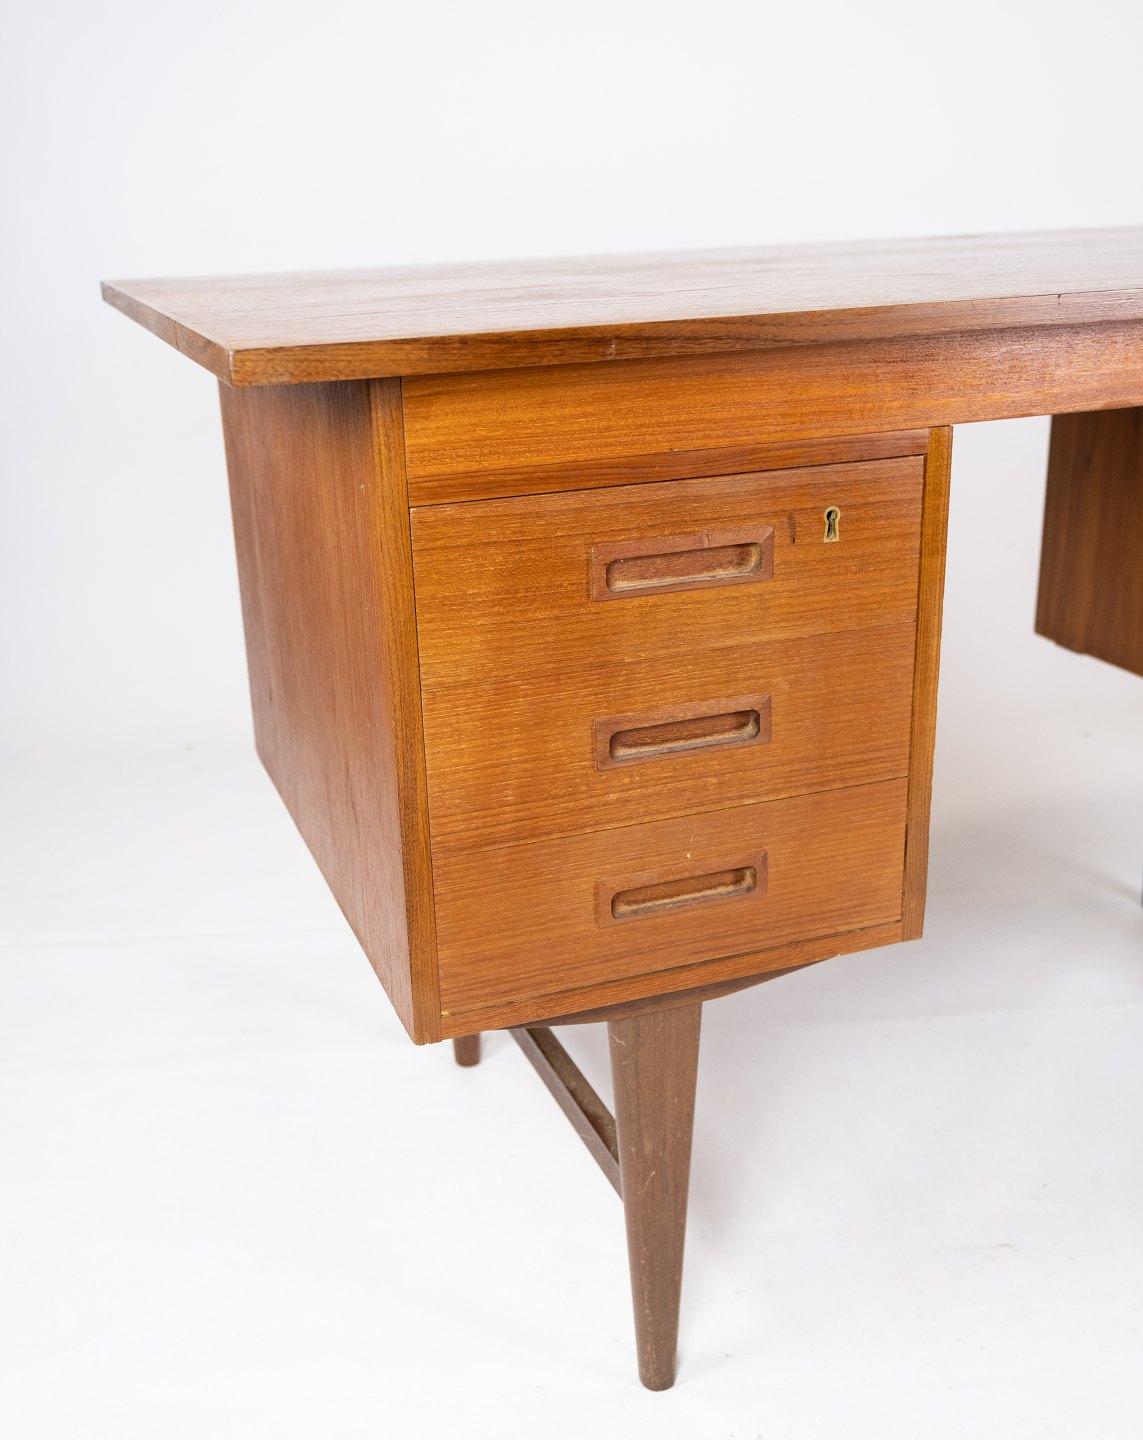 Ce bureau est un exemple de design danois des années 1960 et est fabriqué en bois de teck, ce qui lui confère un aspect naturel et intemporel. La belle couleur dorée et le grain de bois unique ajoutent du caractère et de la chaleur à n'importe